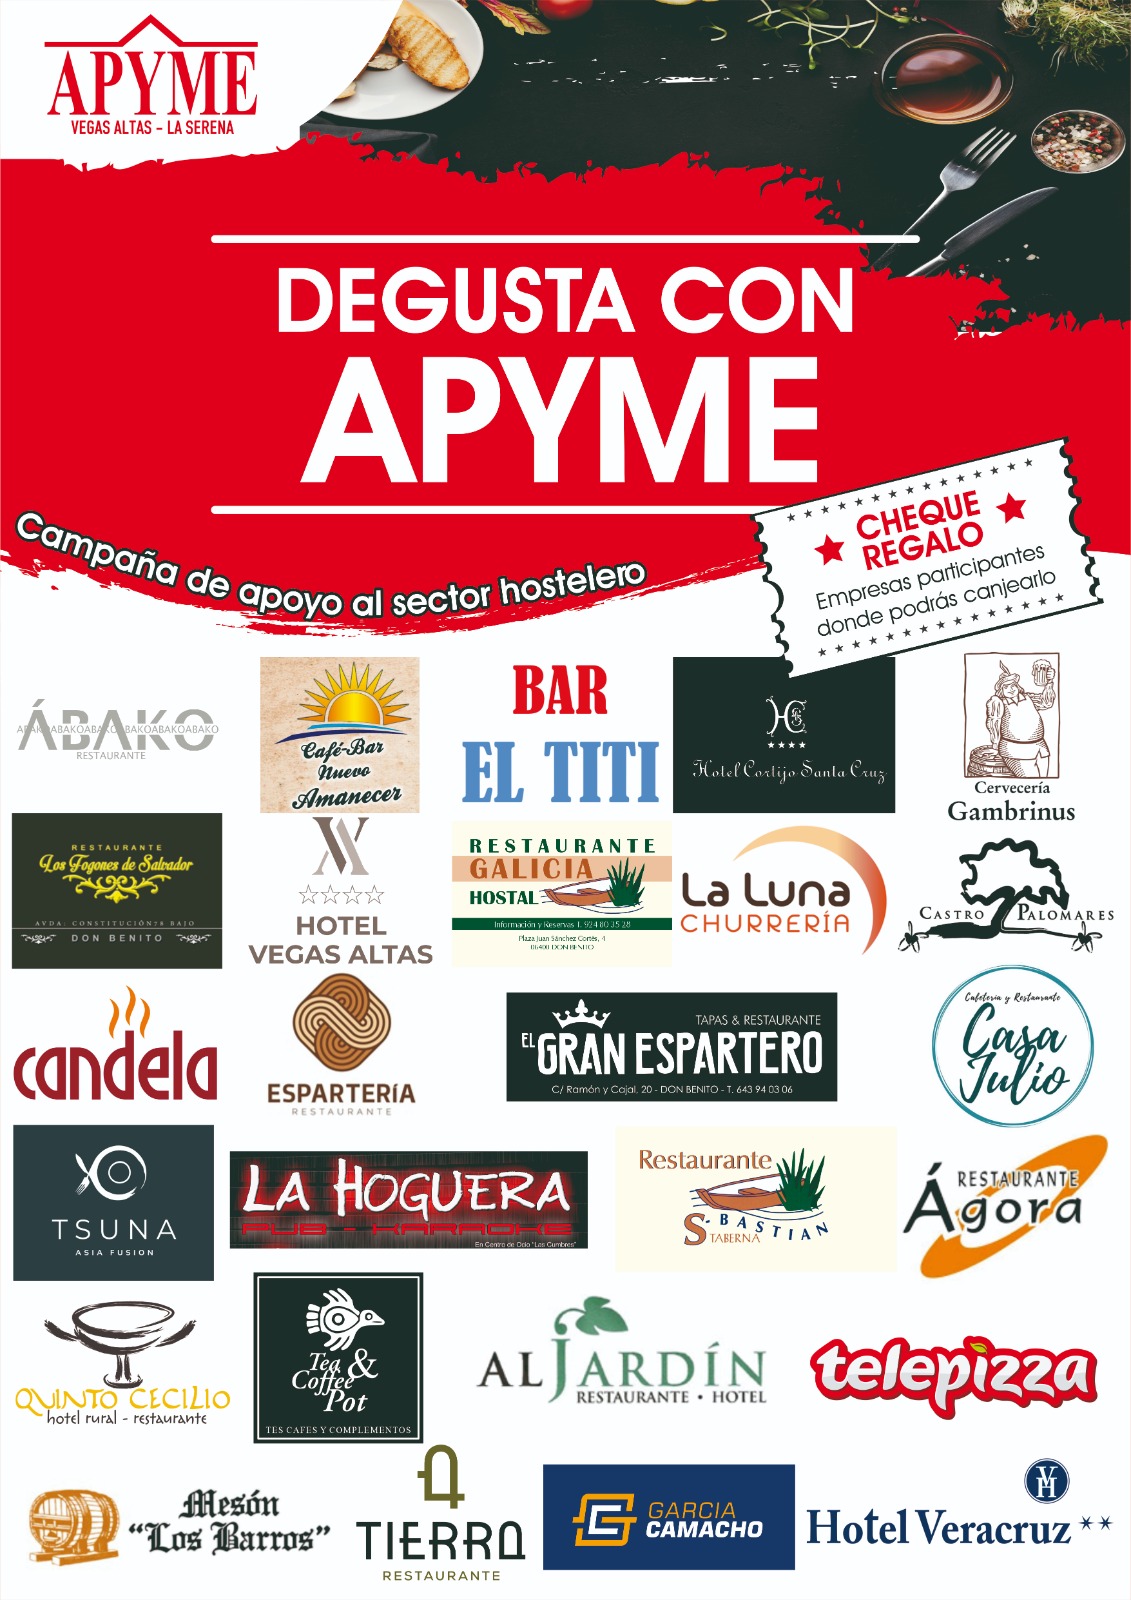 Se pone en marcha la campaña Degusta con APYME en apoyo del sector hostelero